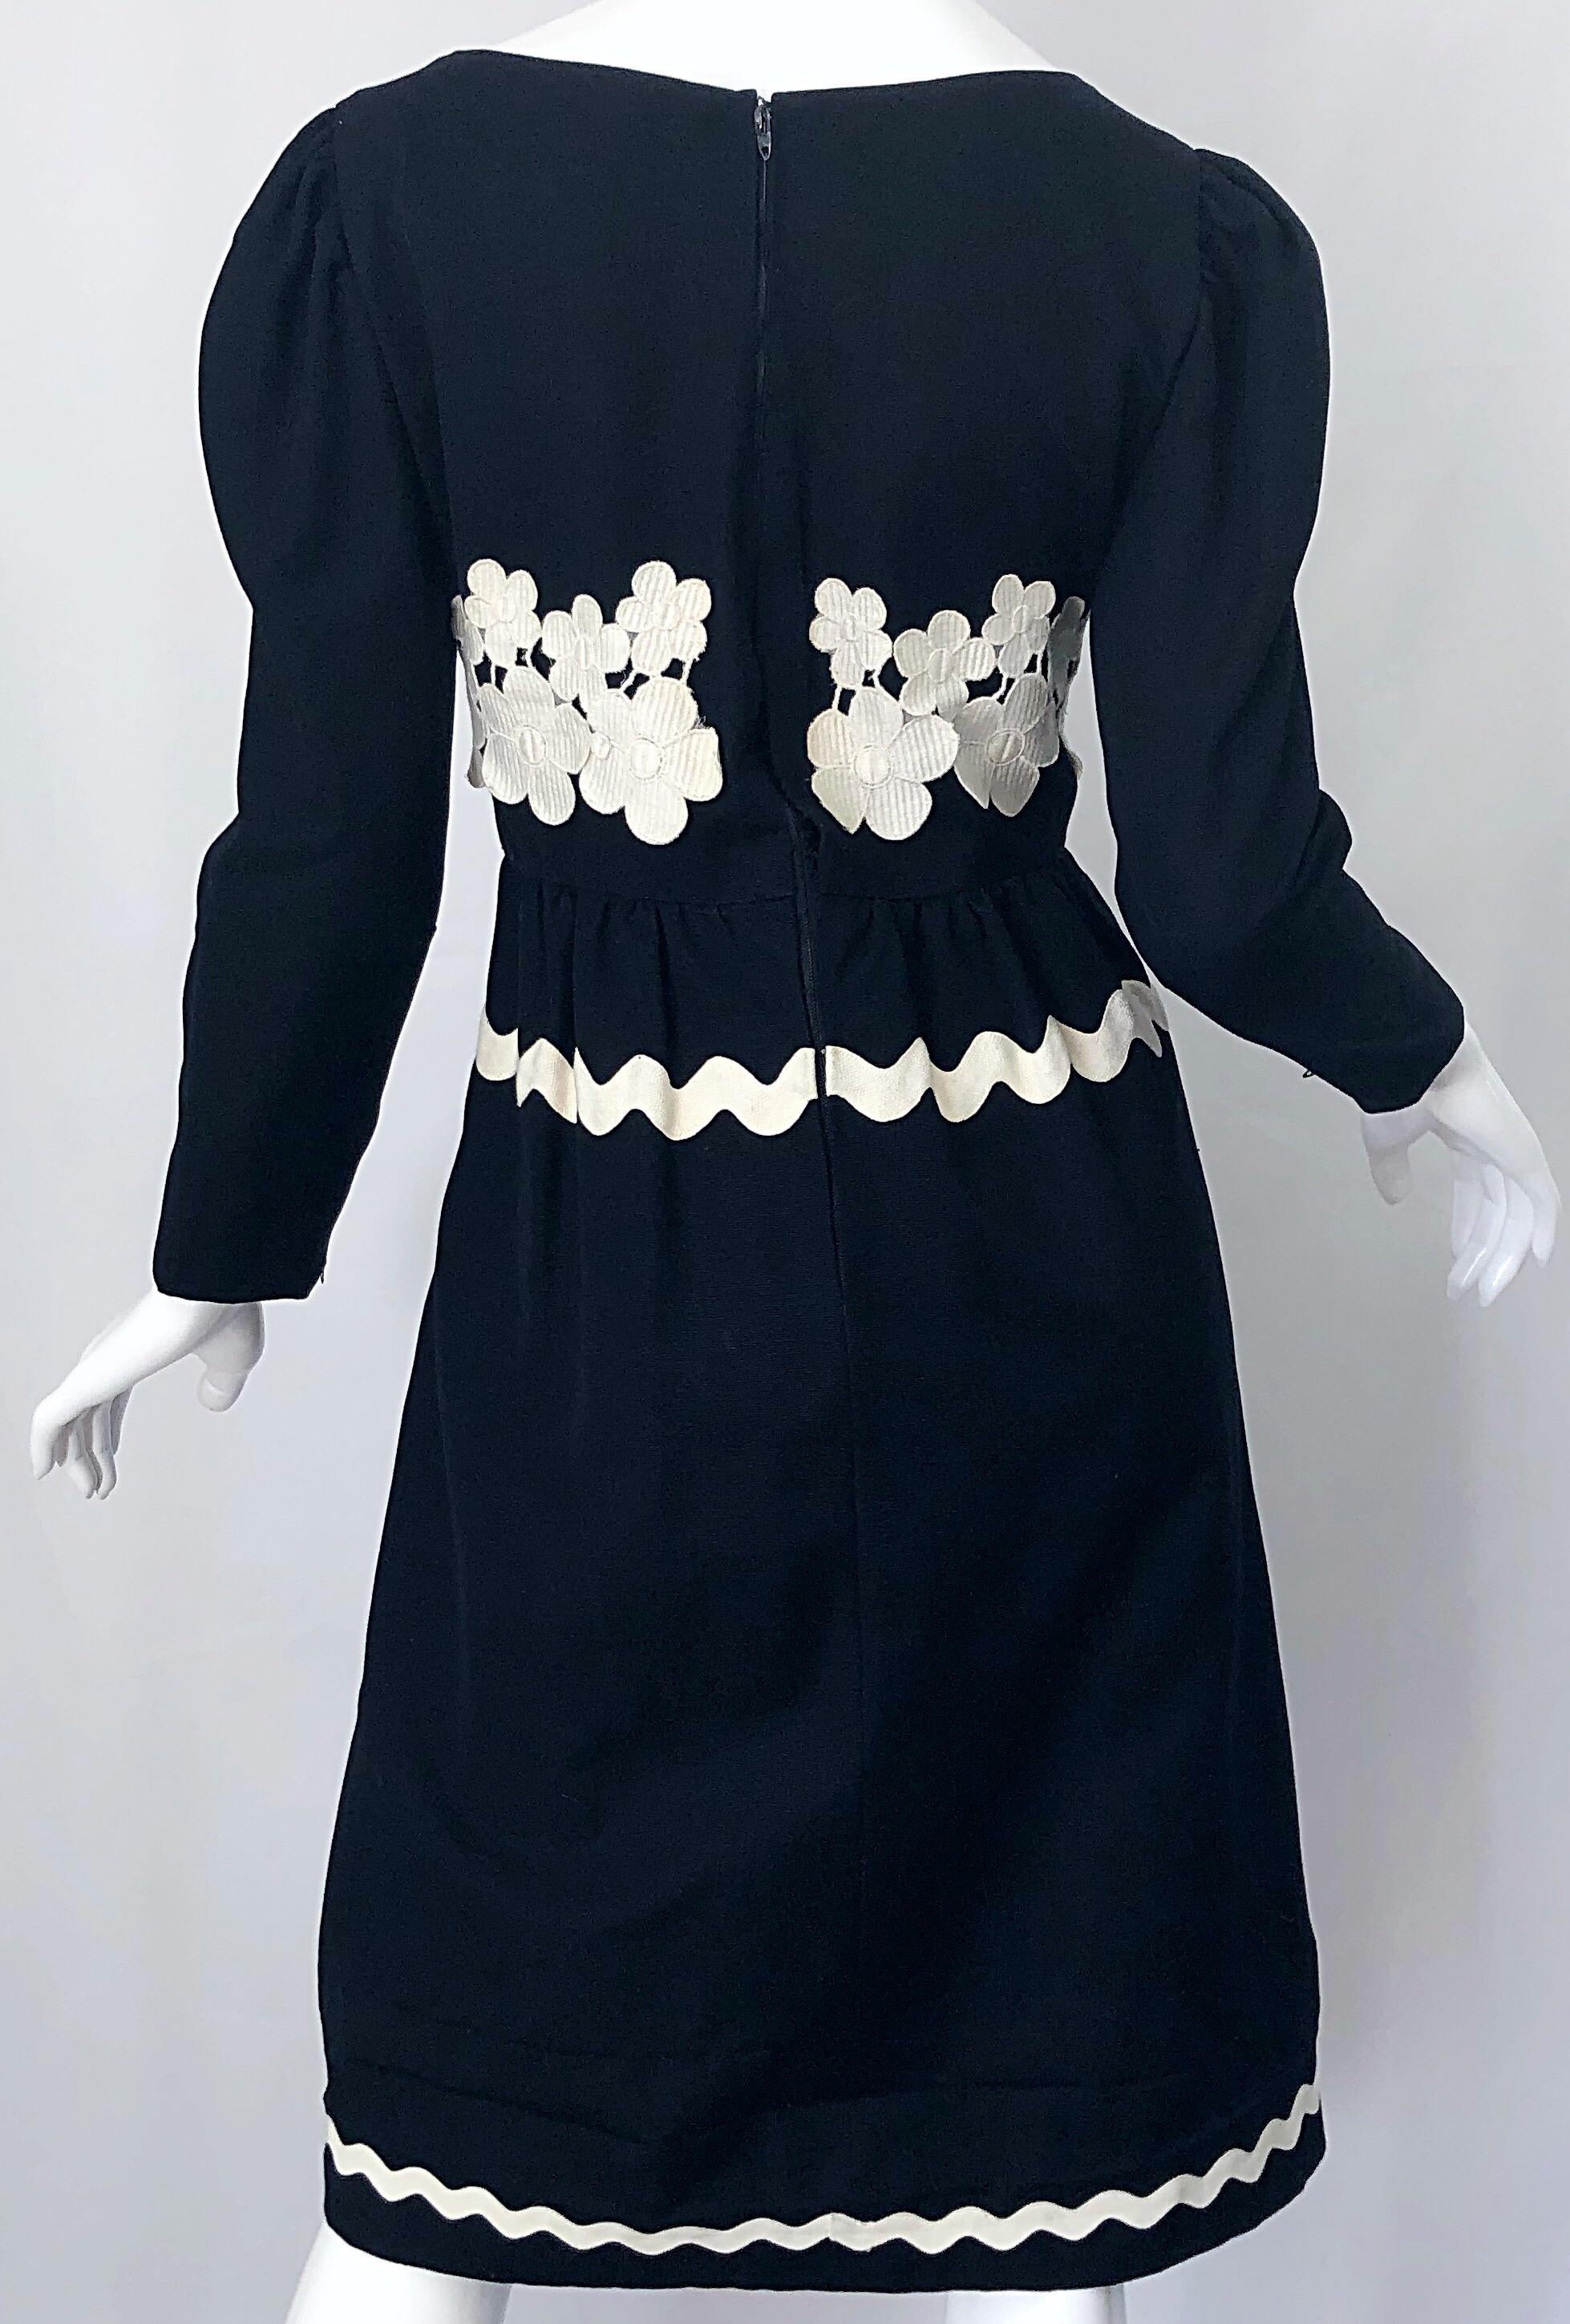 1960s Oscar de la Renta Black and White Embroidered Flower Rickrack 60s Dress For Sale 7